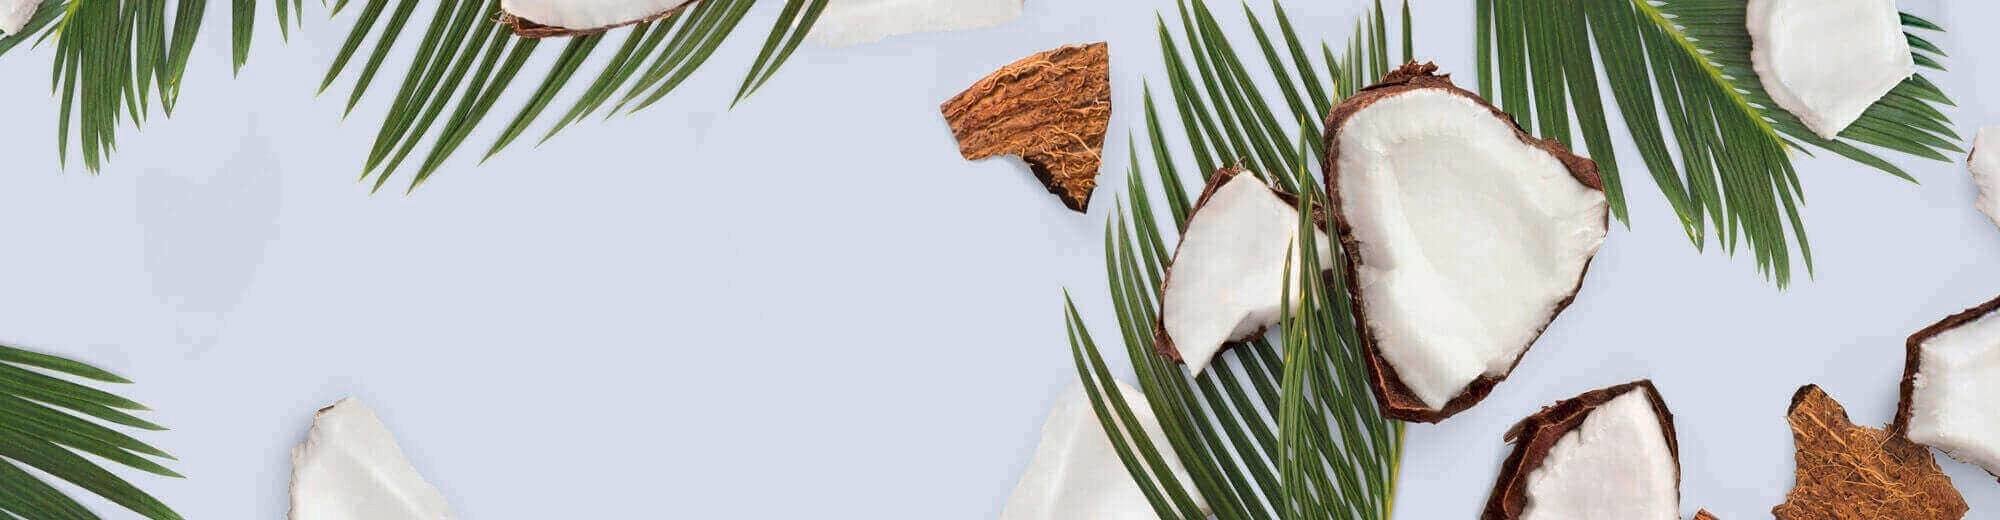 coconut oil ylang ylang Text